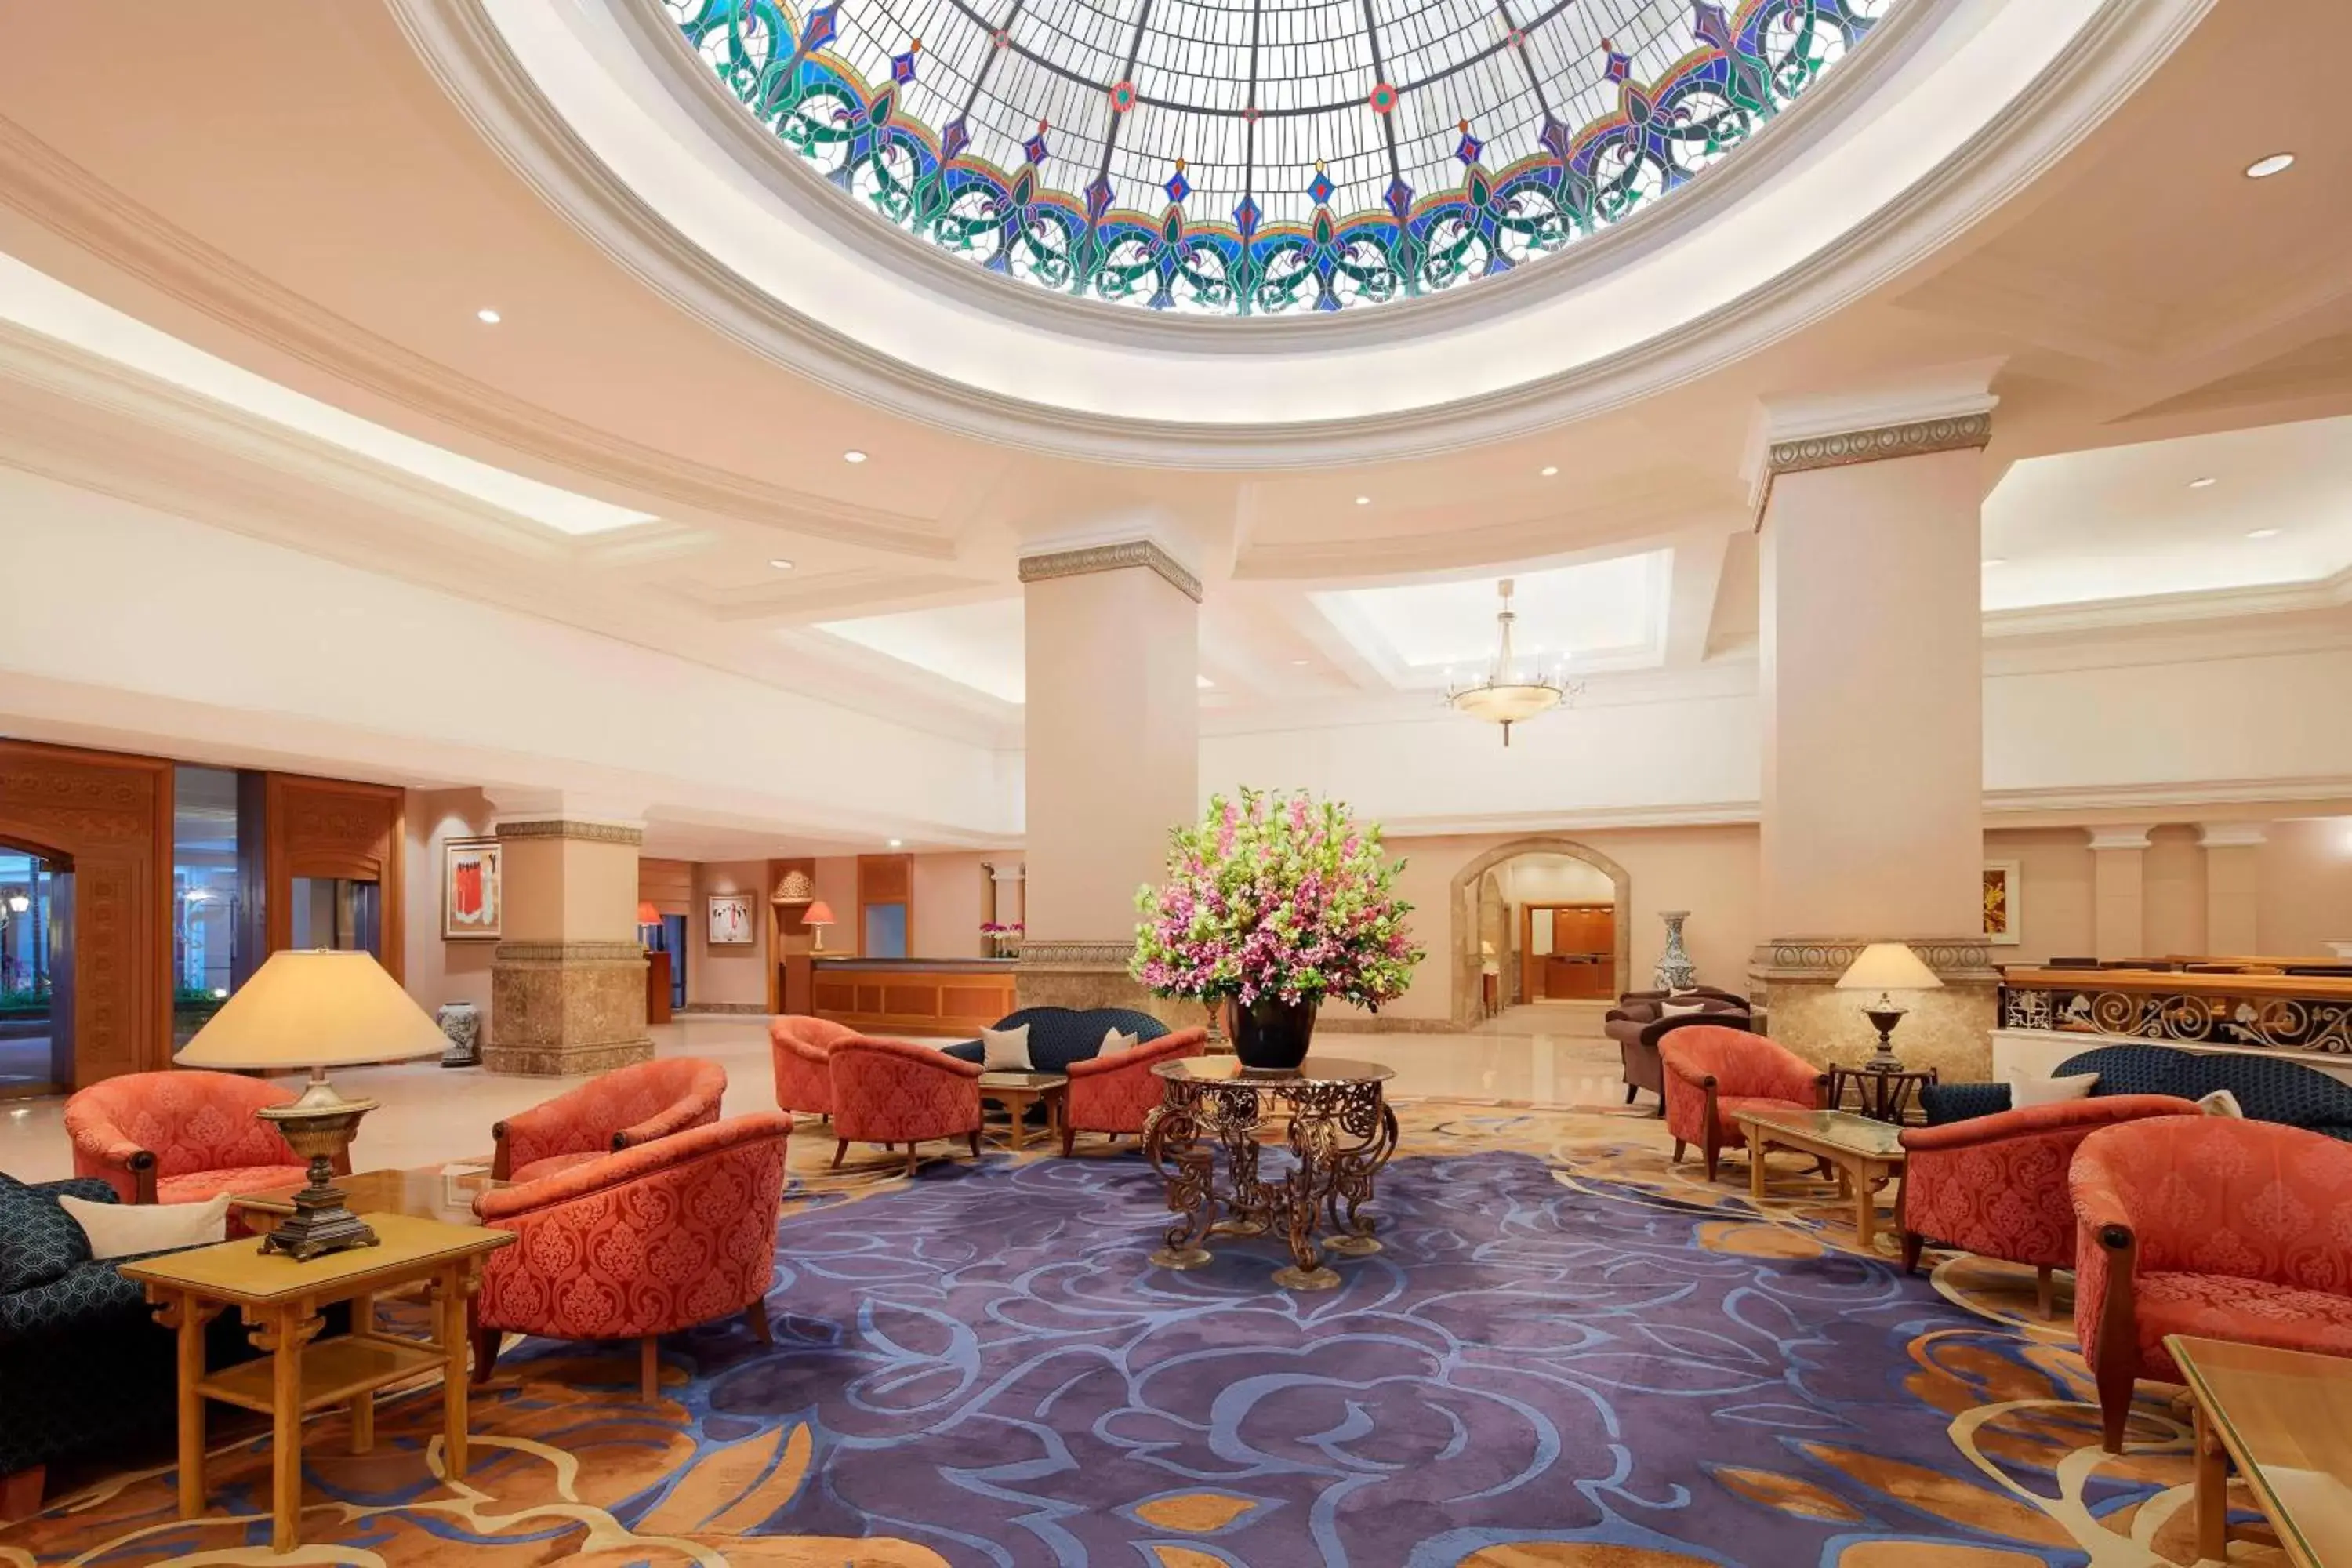 Lobby or reception in Sheraton Hanoi Hotel